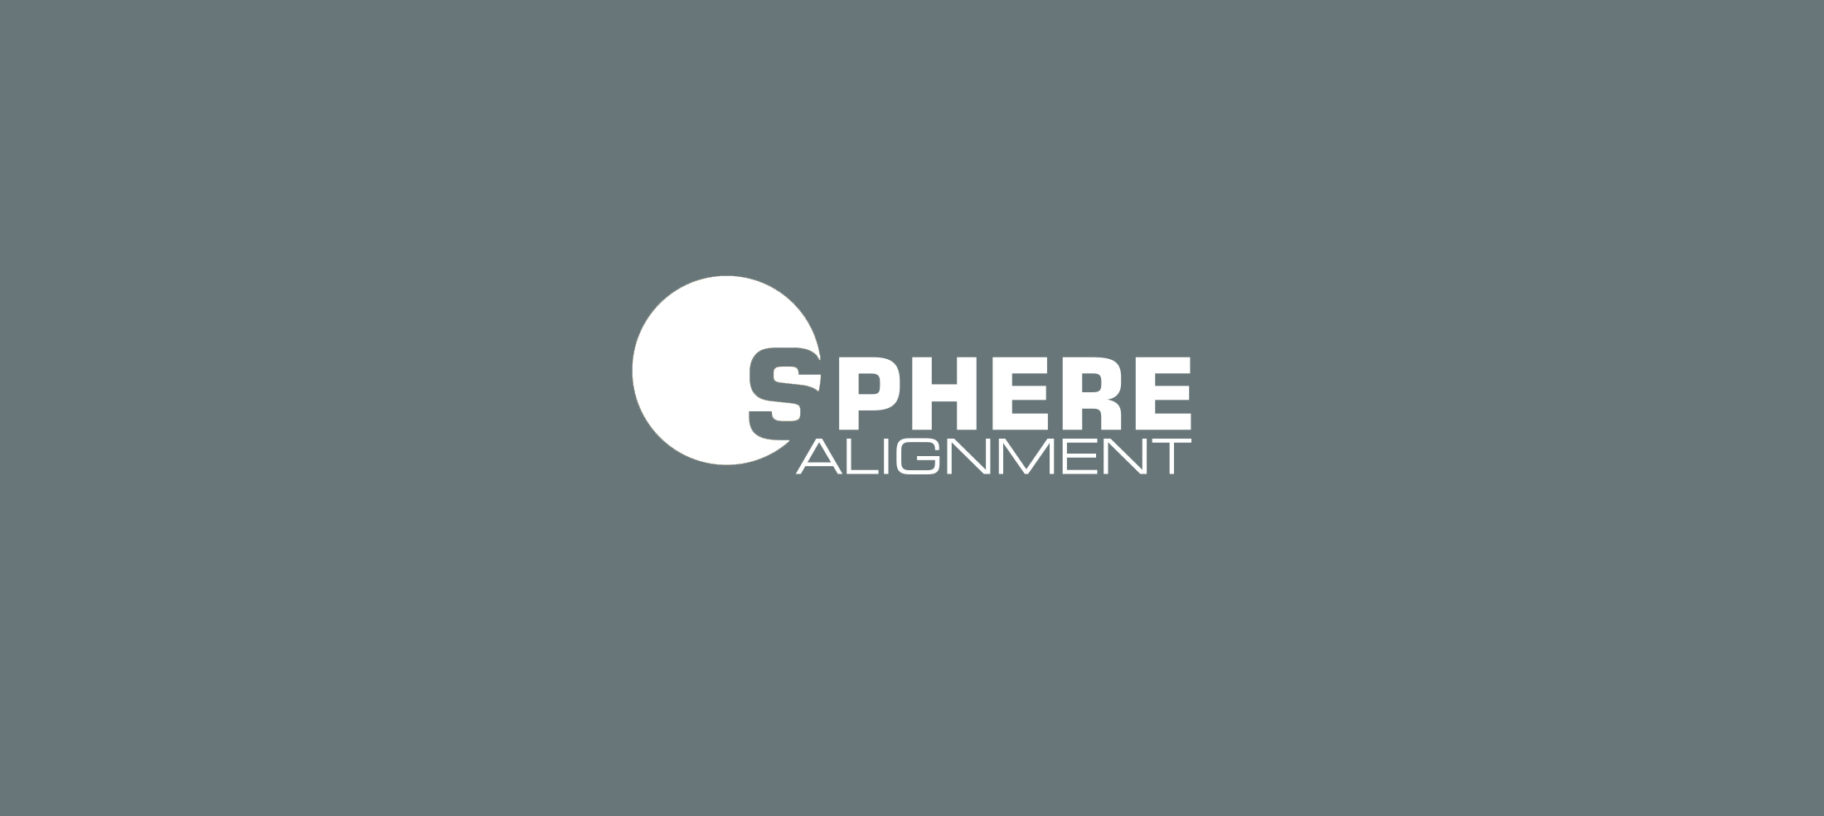 SPHERE-Alignment-logo-grigio